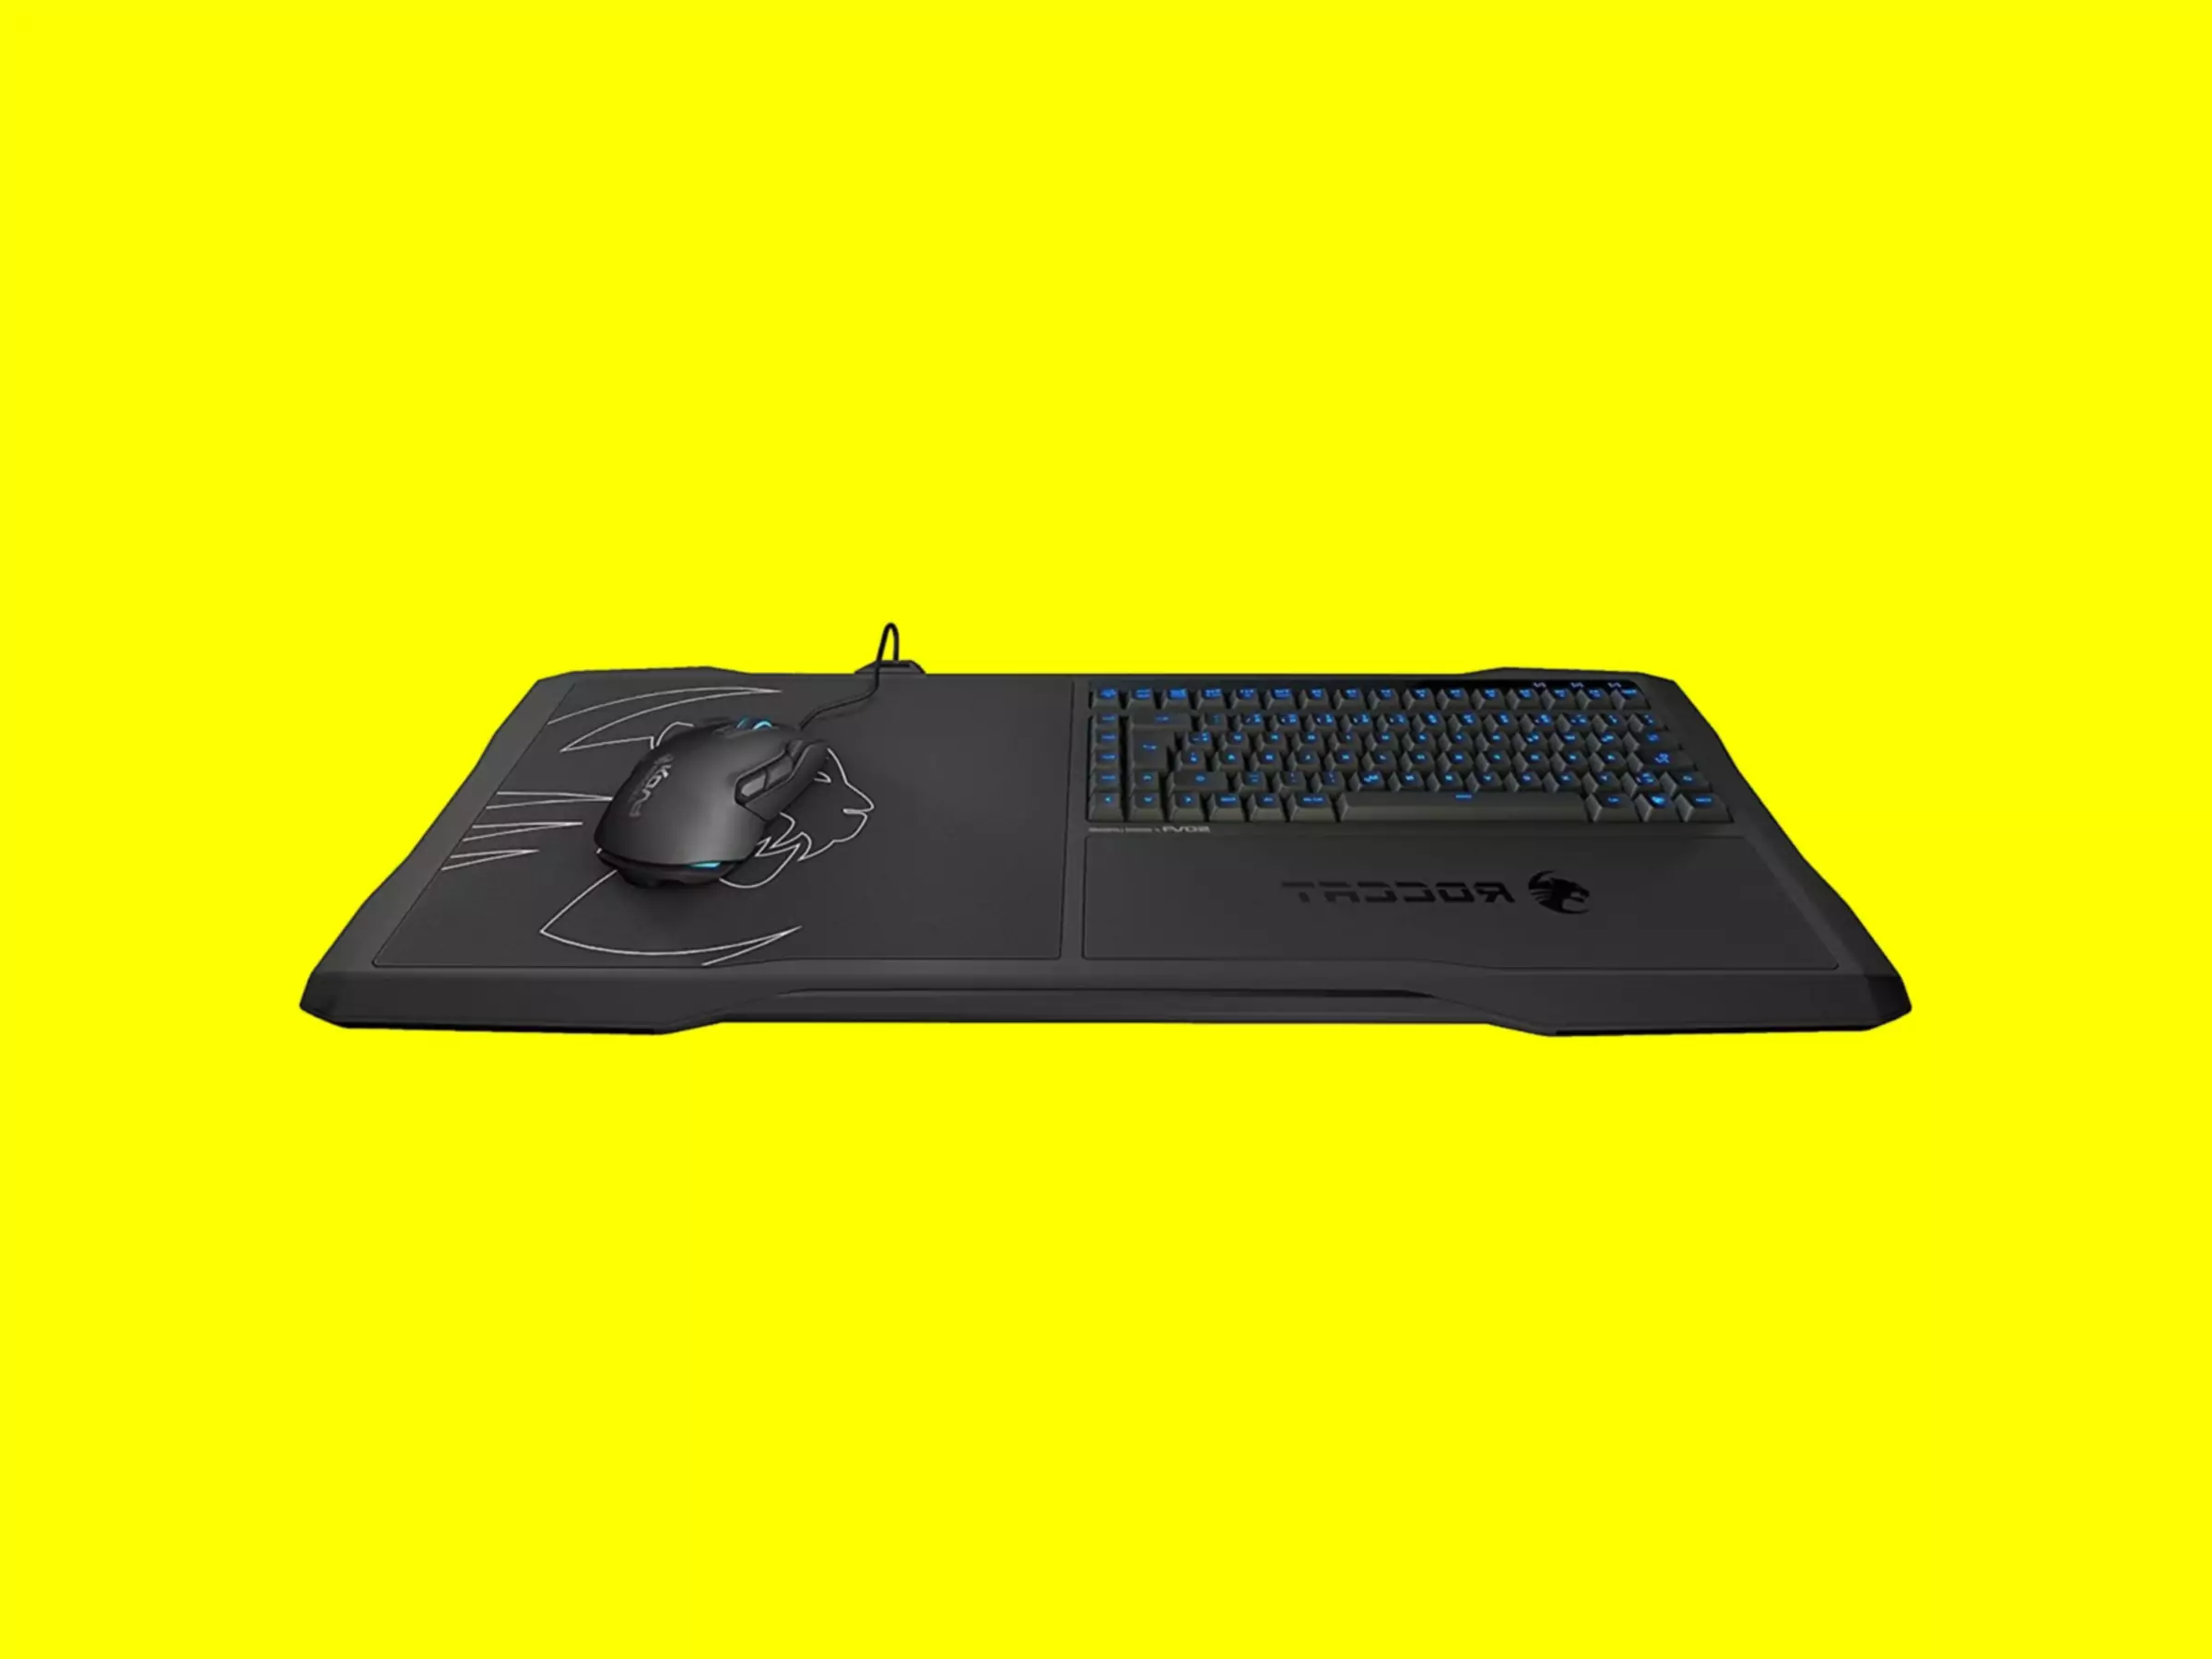 带键盘和鼠标的ROCCAT Sova游戏板